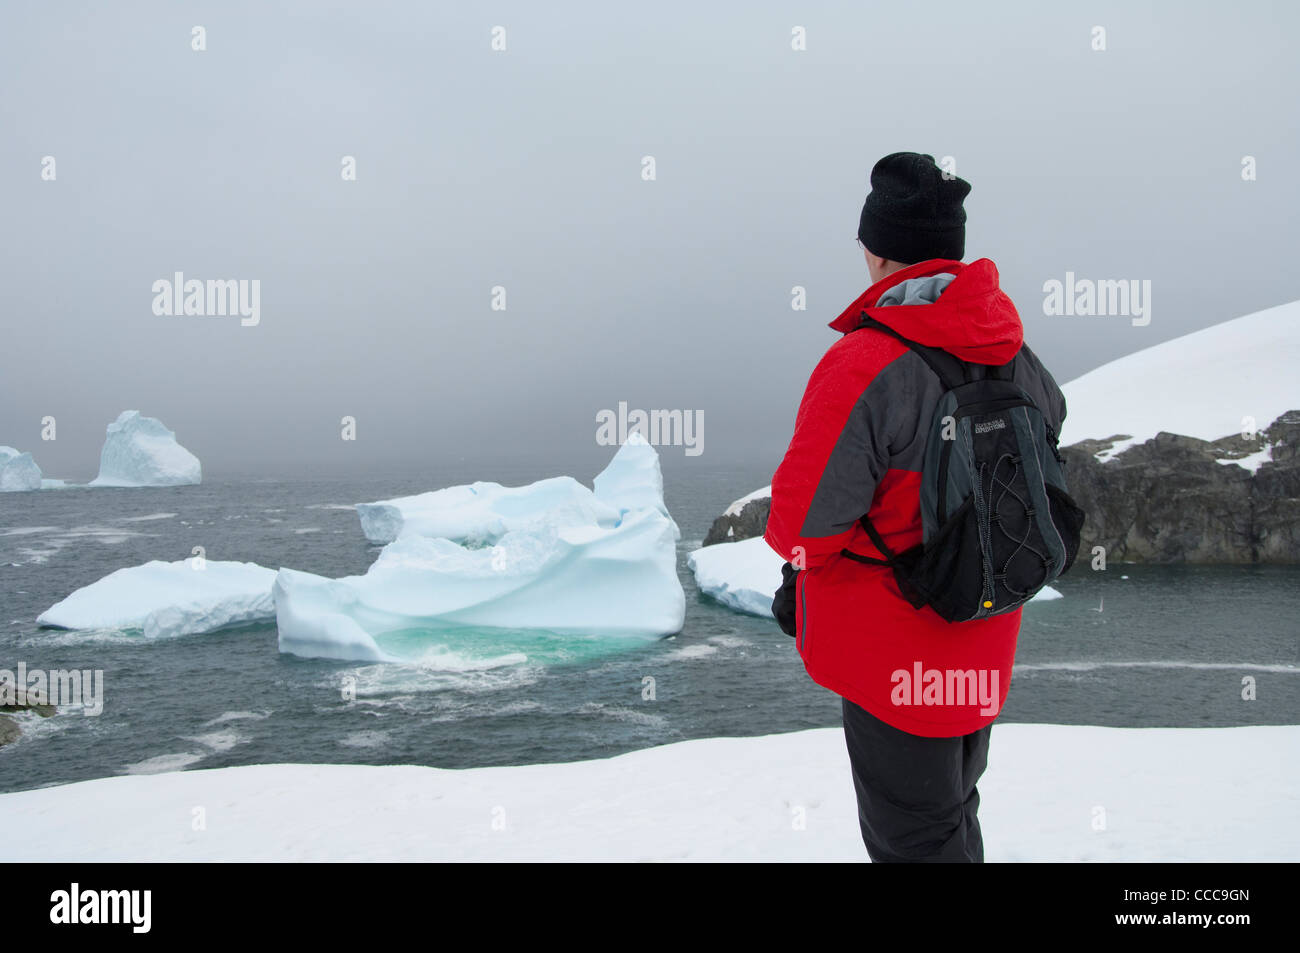 L'Antartide, penisola antartica. petermann island. Modello rilasciato. Foto Stock